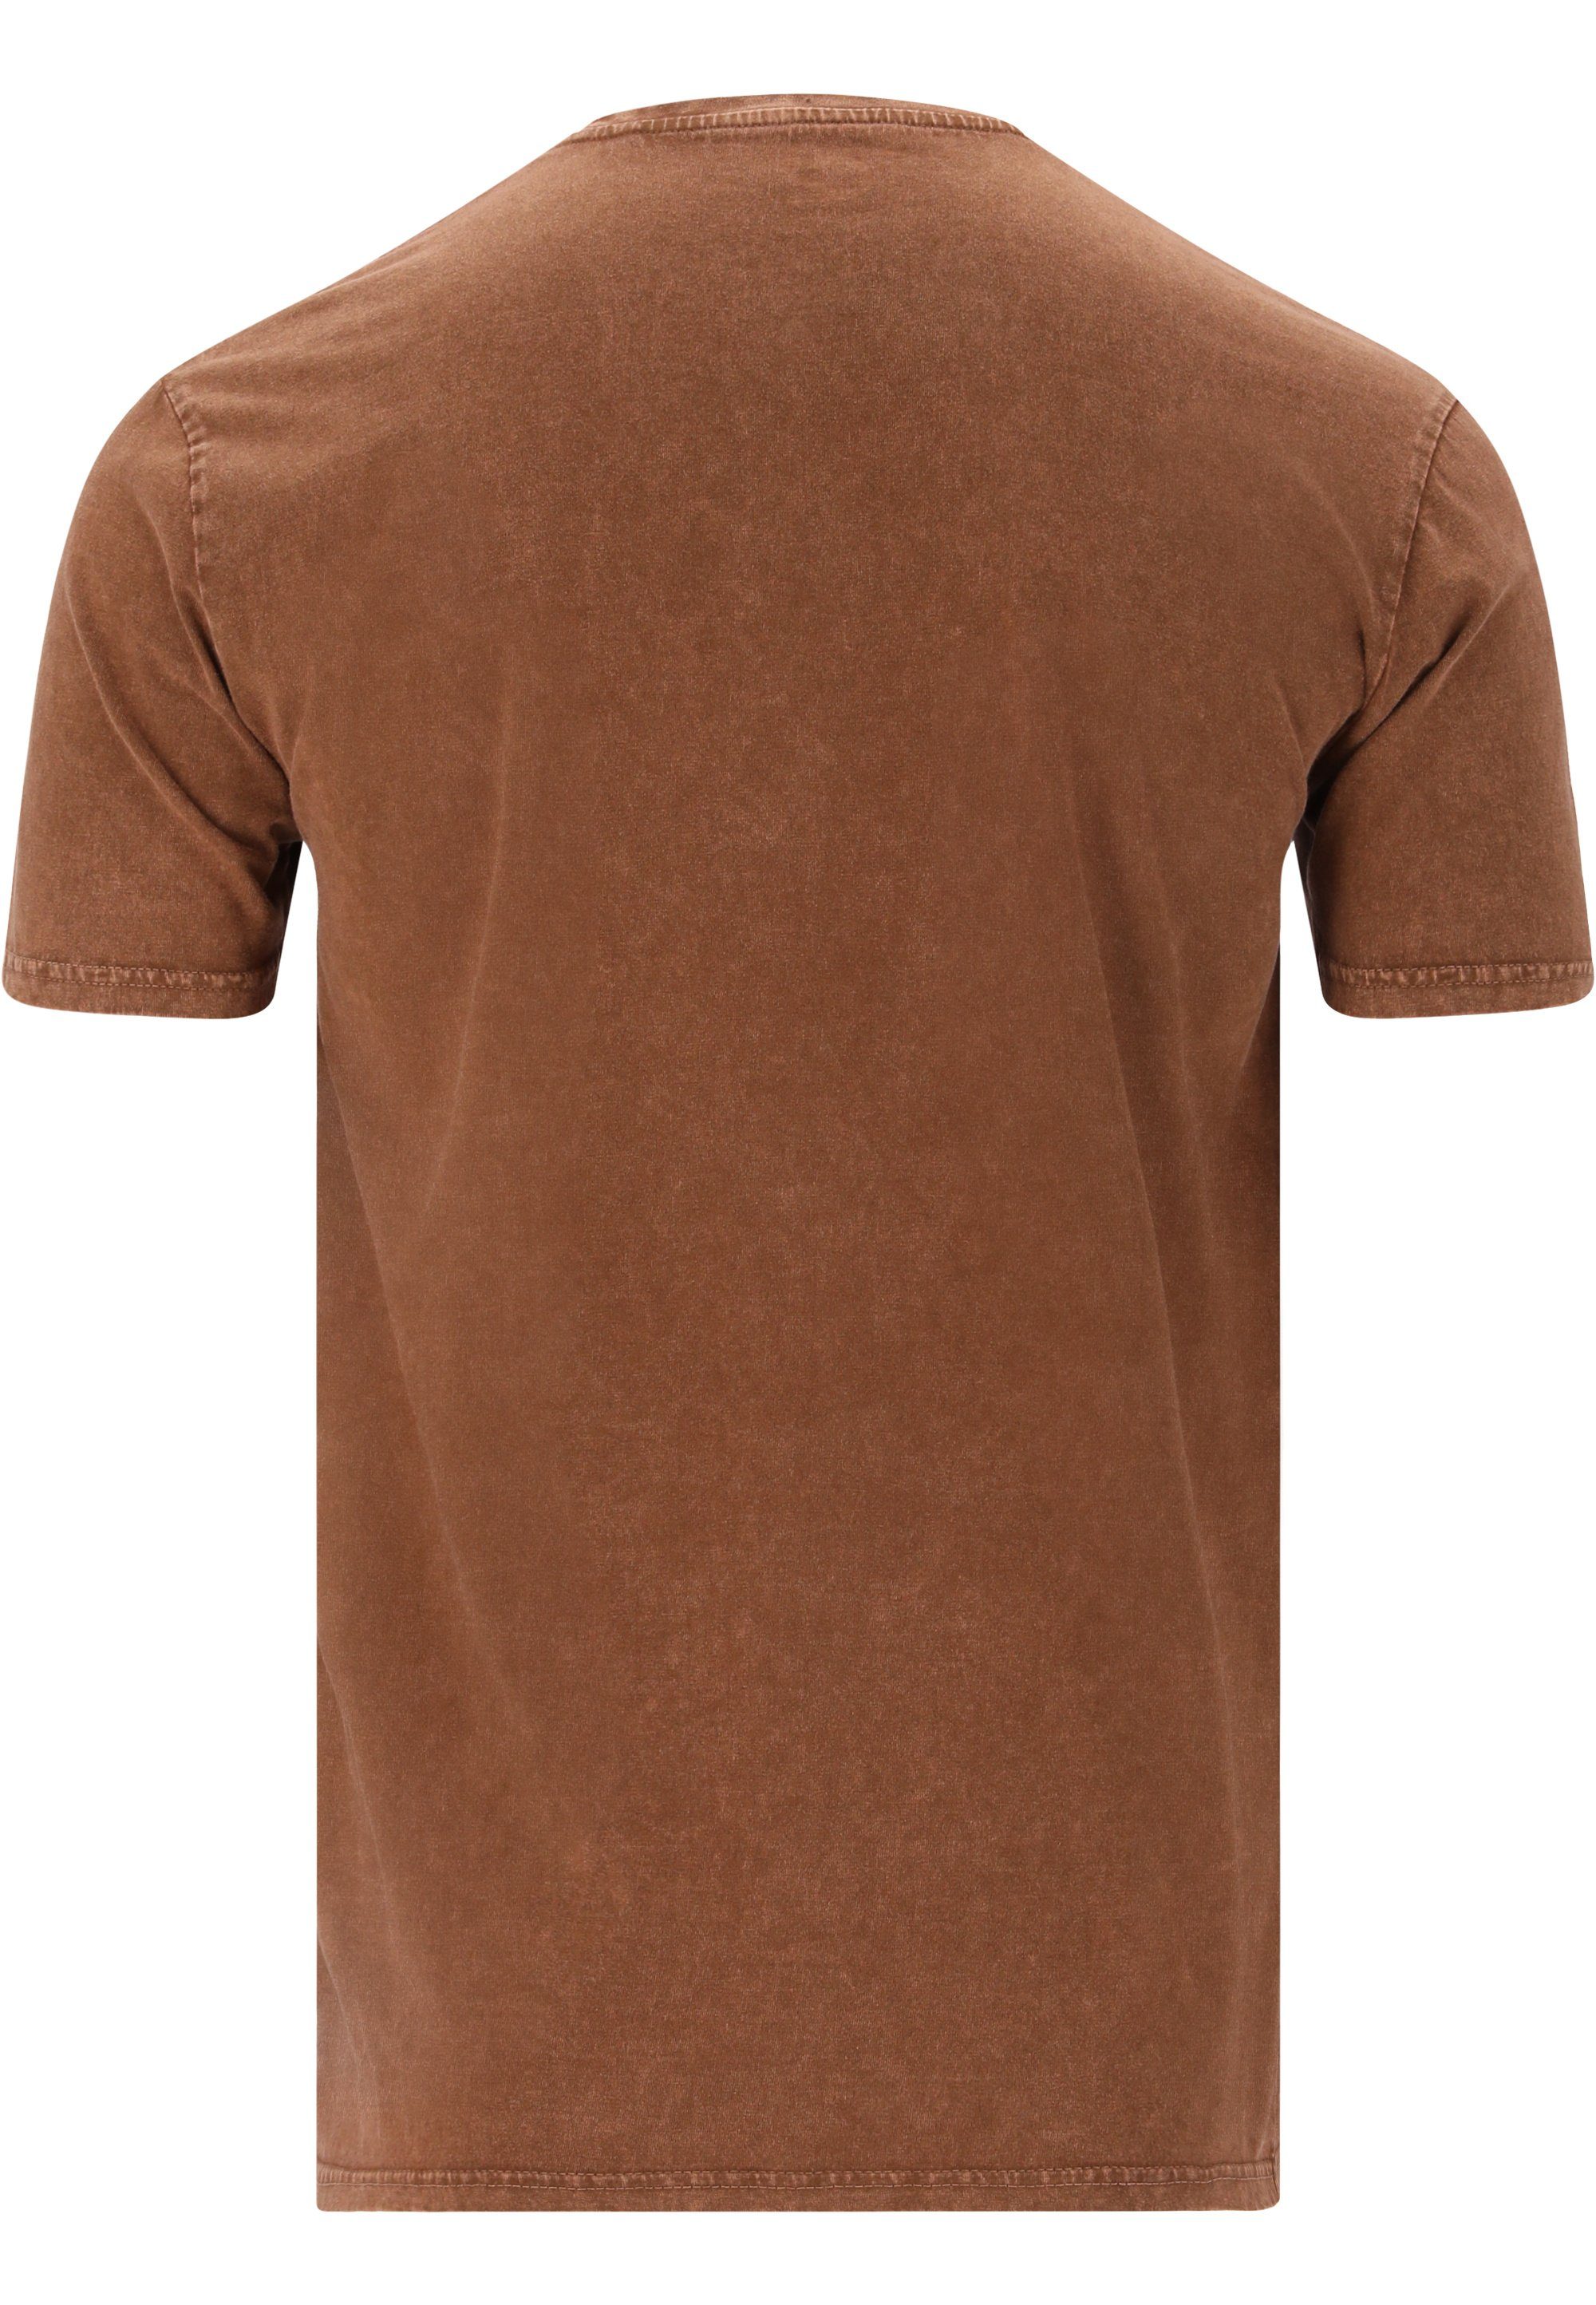 braun T-Shirt Russel mit CRUZ atmungsaktiver Funktion